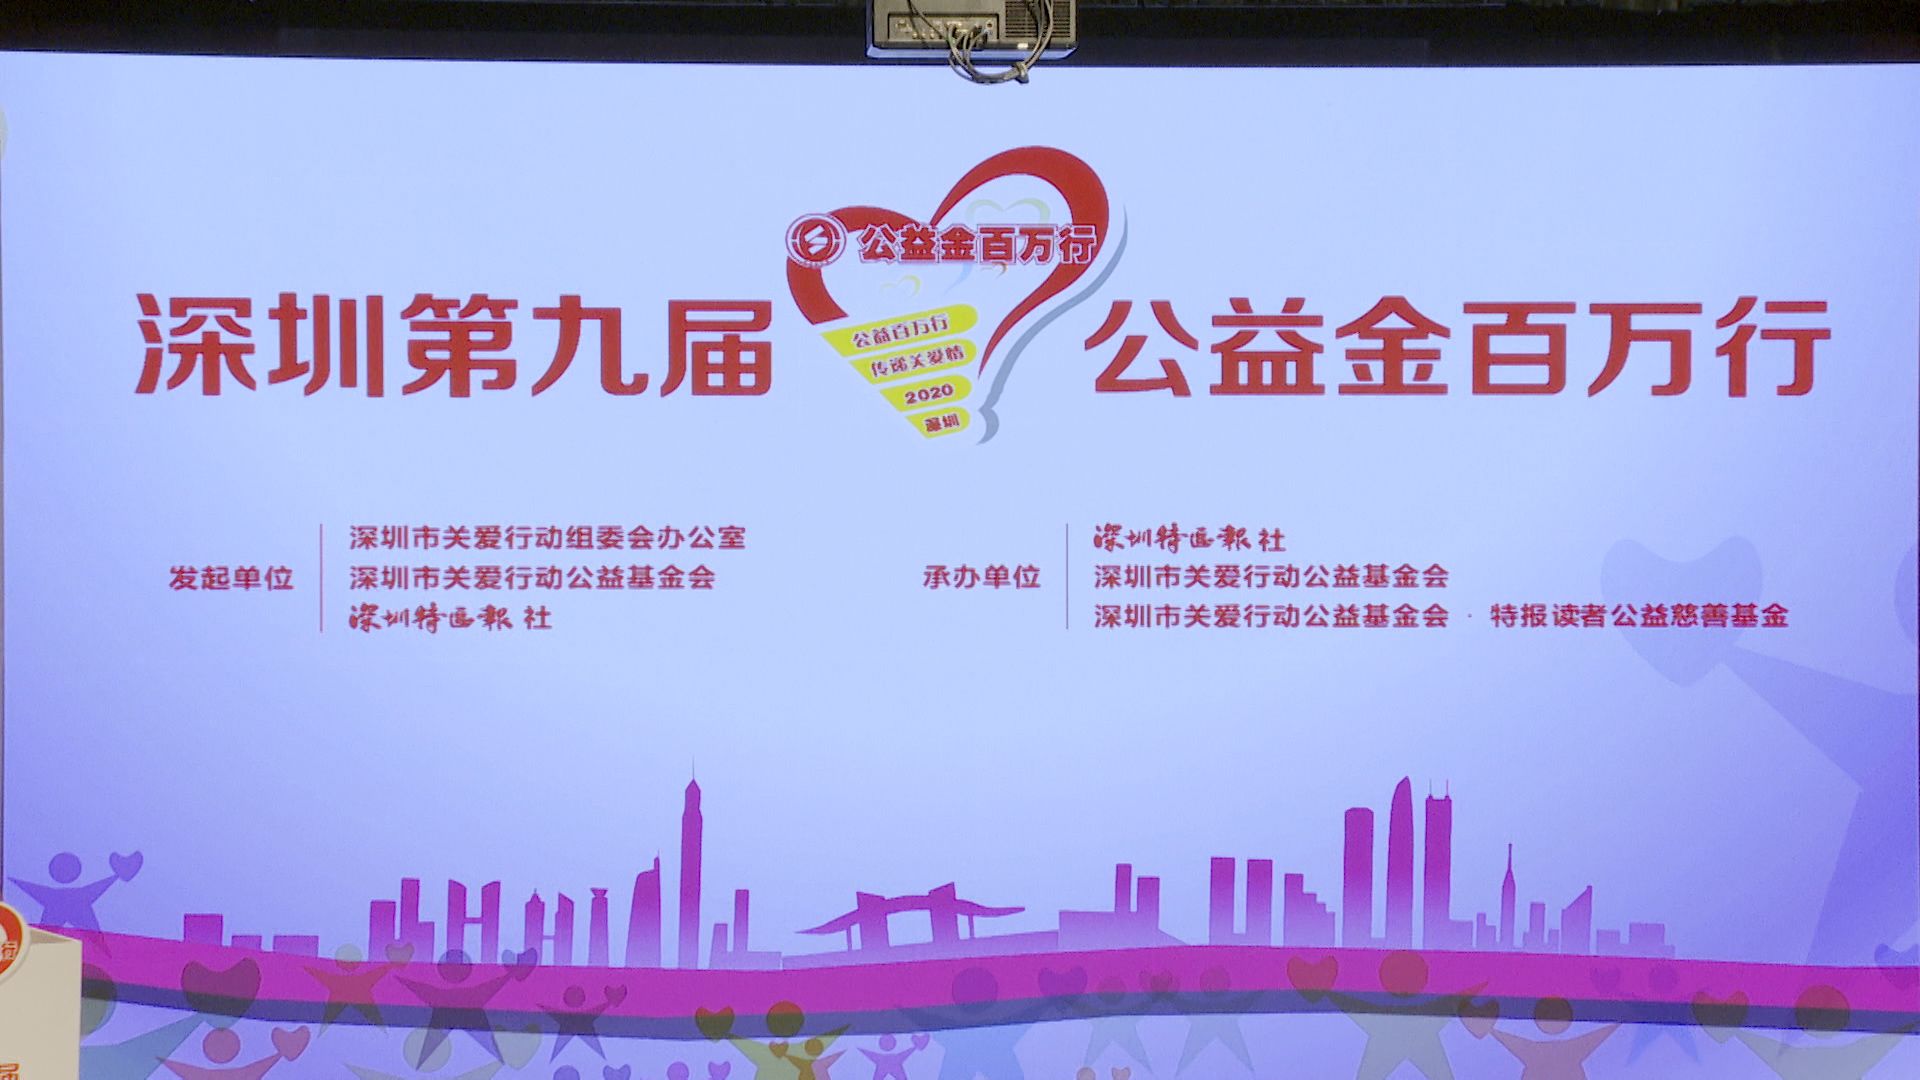 为爱起步！深圳第九届“公益金百万行”活动正式启动

